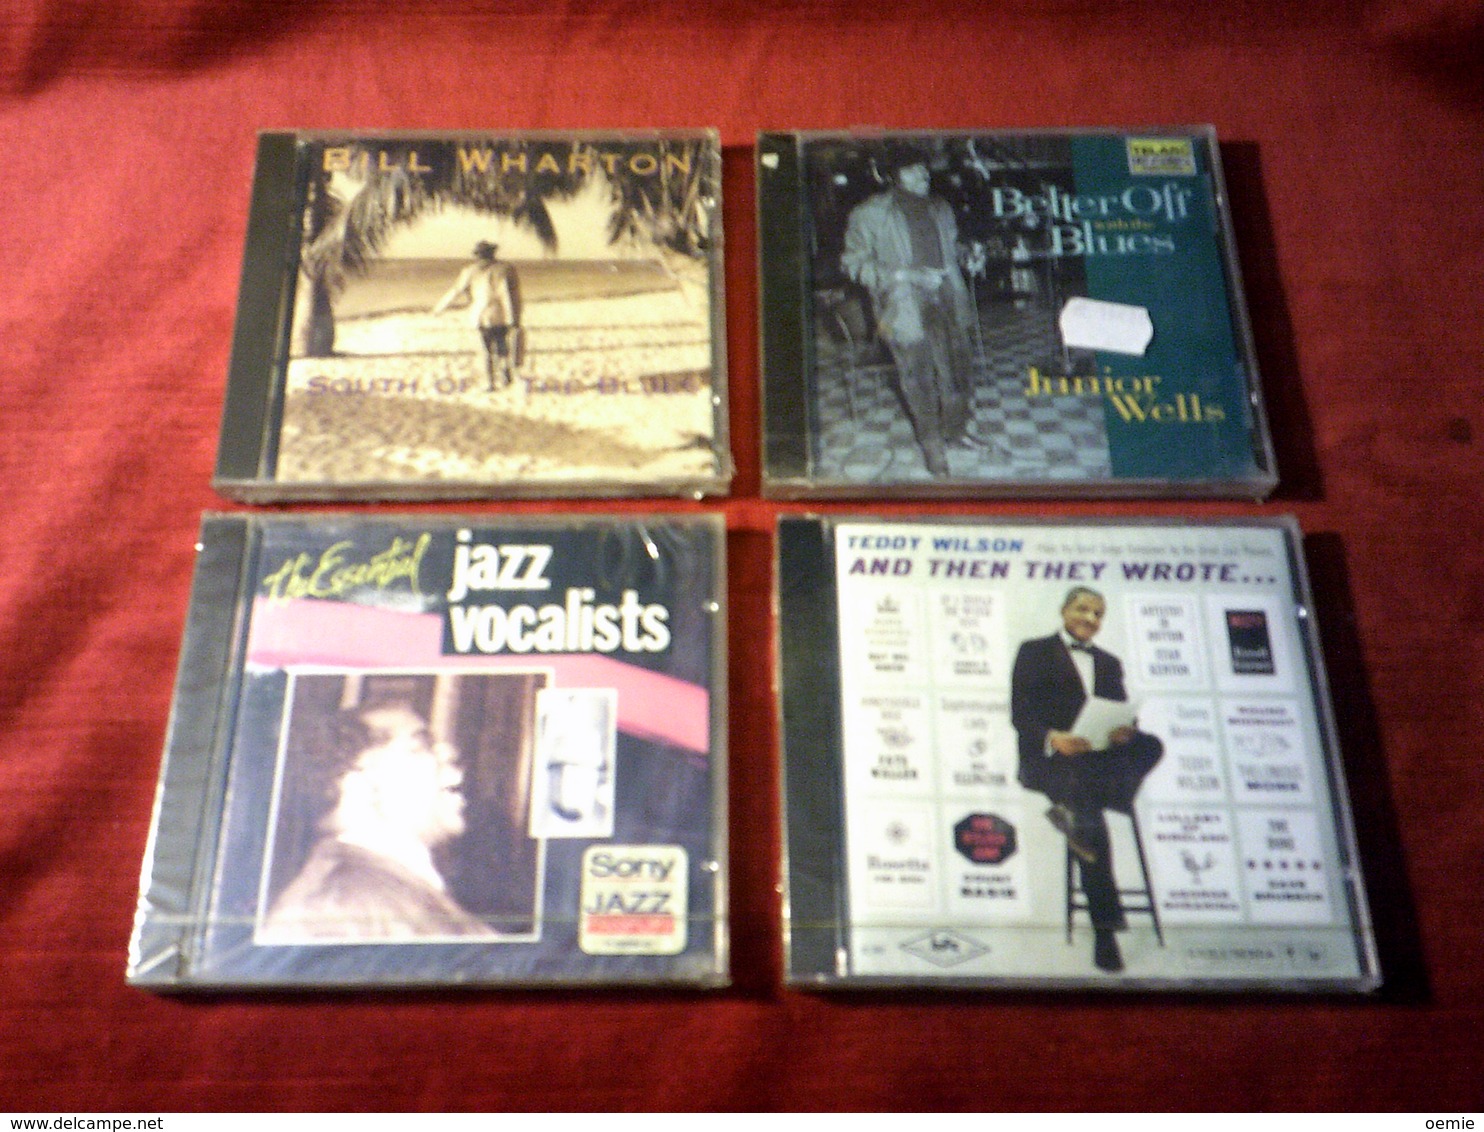 COLLECTION DE 4 CD ALBUM DE JAZZ ° BILL WHARTON + TEDDY WILSON + JUNIORS WELLS + THE ESSENTIAL JAZZ VOCALISTS - Complete Collections